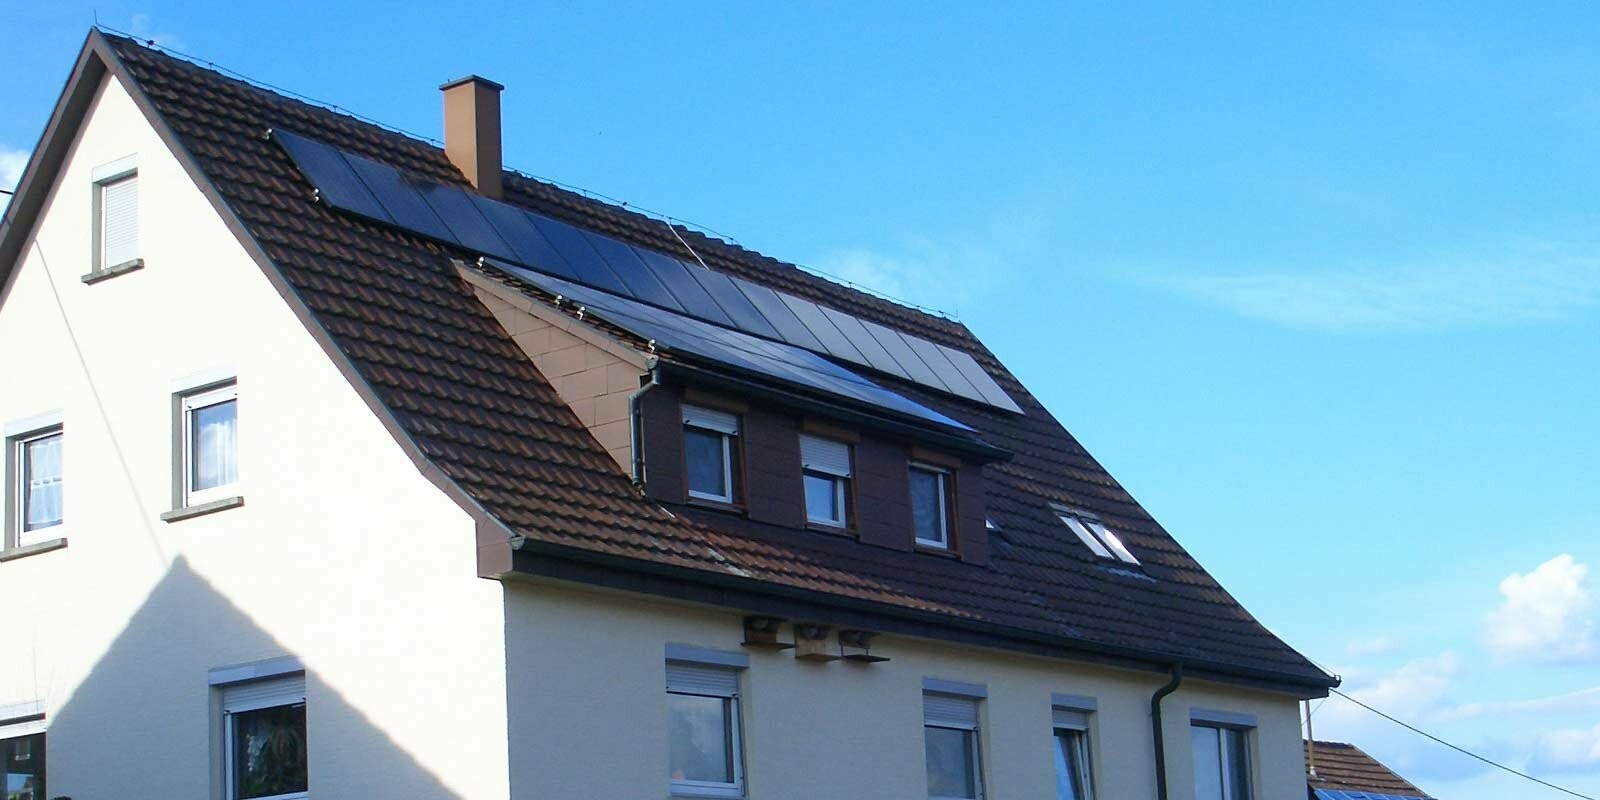 Maison individuelle avec toit en tuiles nécessitant une rénovation. Le toit est pourvu d’une lucarne ainsi que d’une installation photovoltaïque.